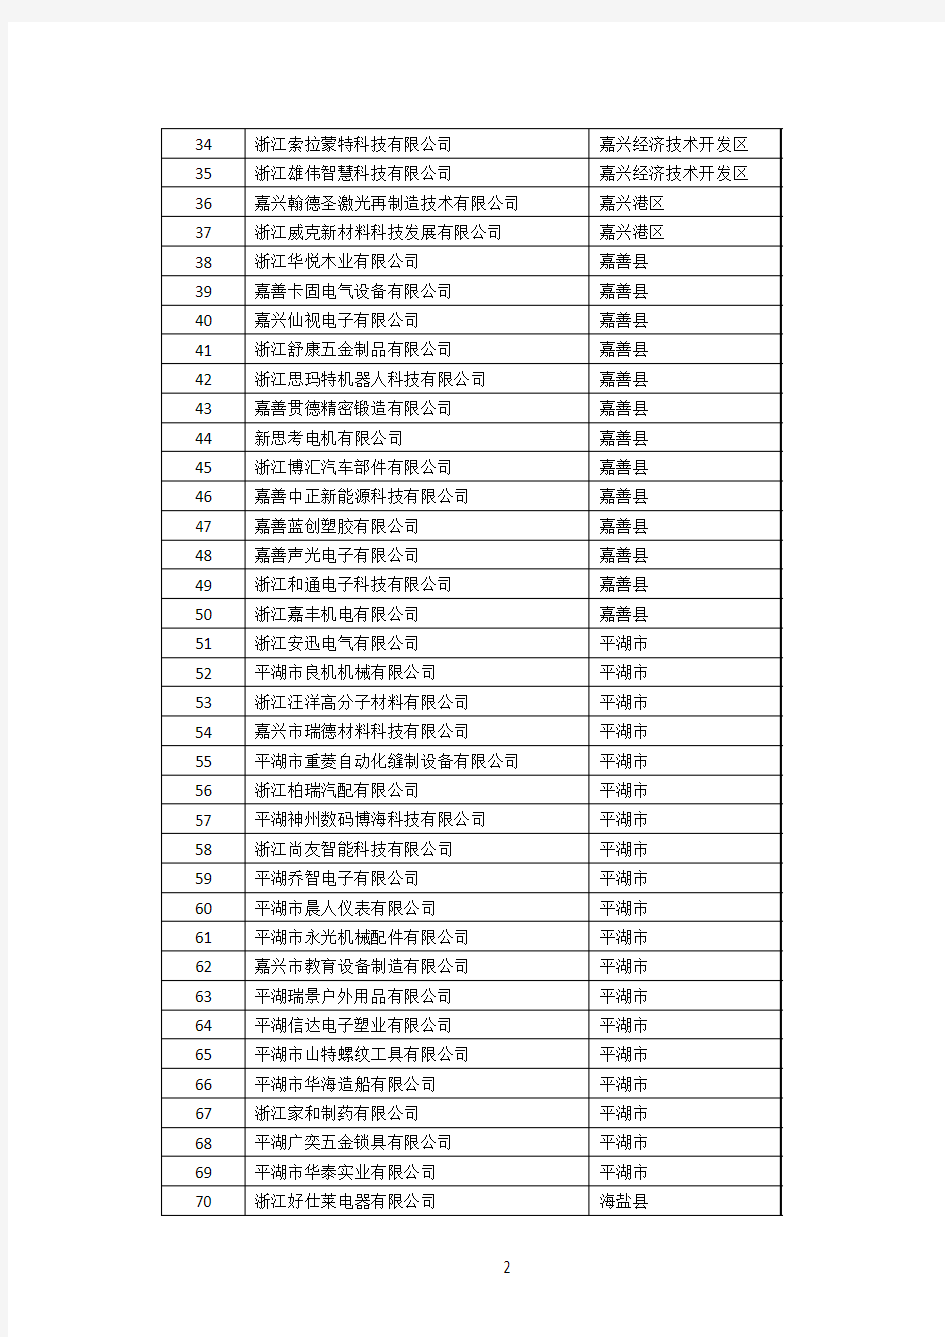 拟推荐嘉兴市2017年浙江省高成长科技型中小企业名单